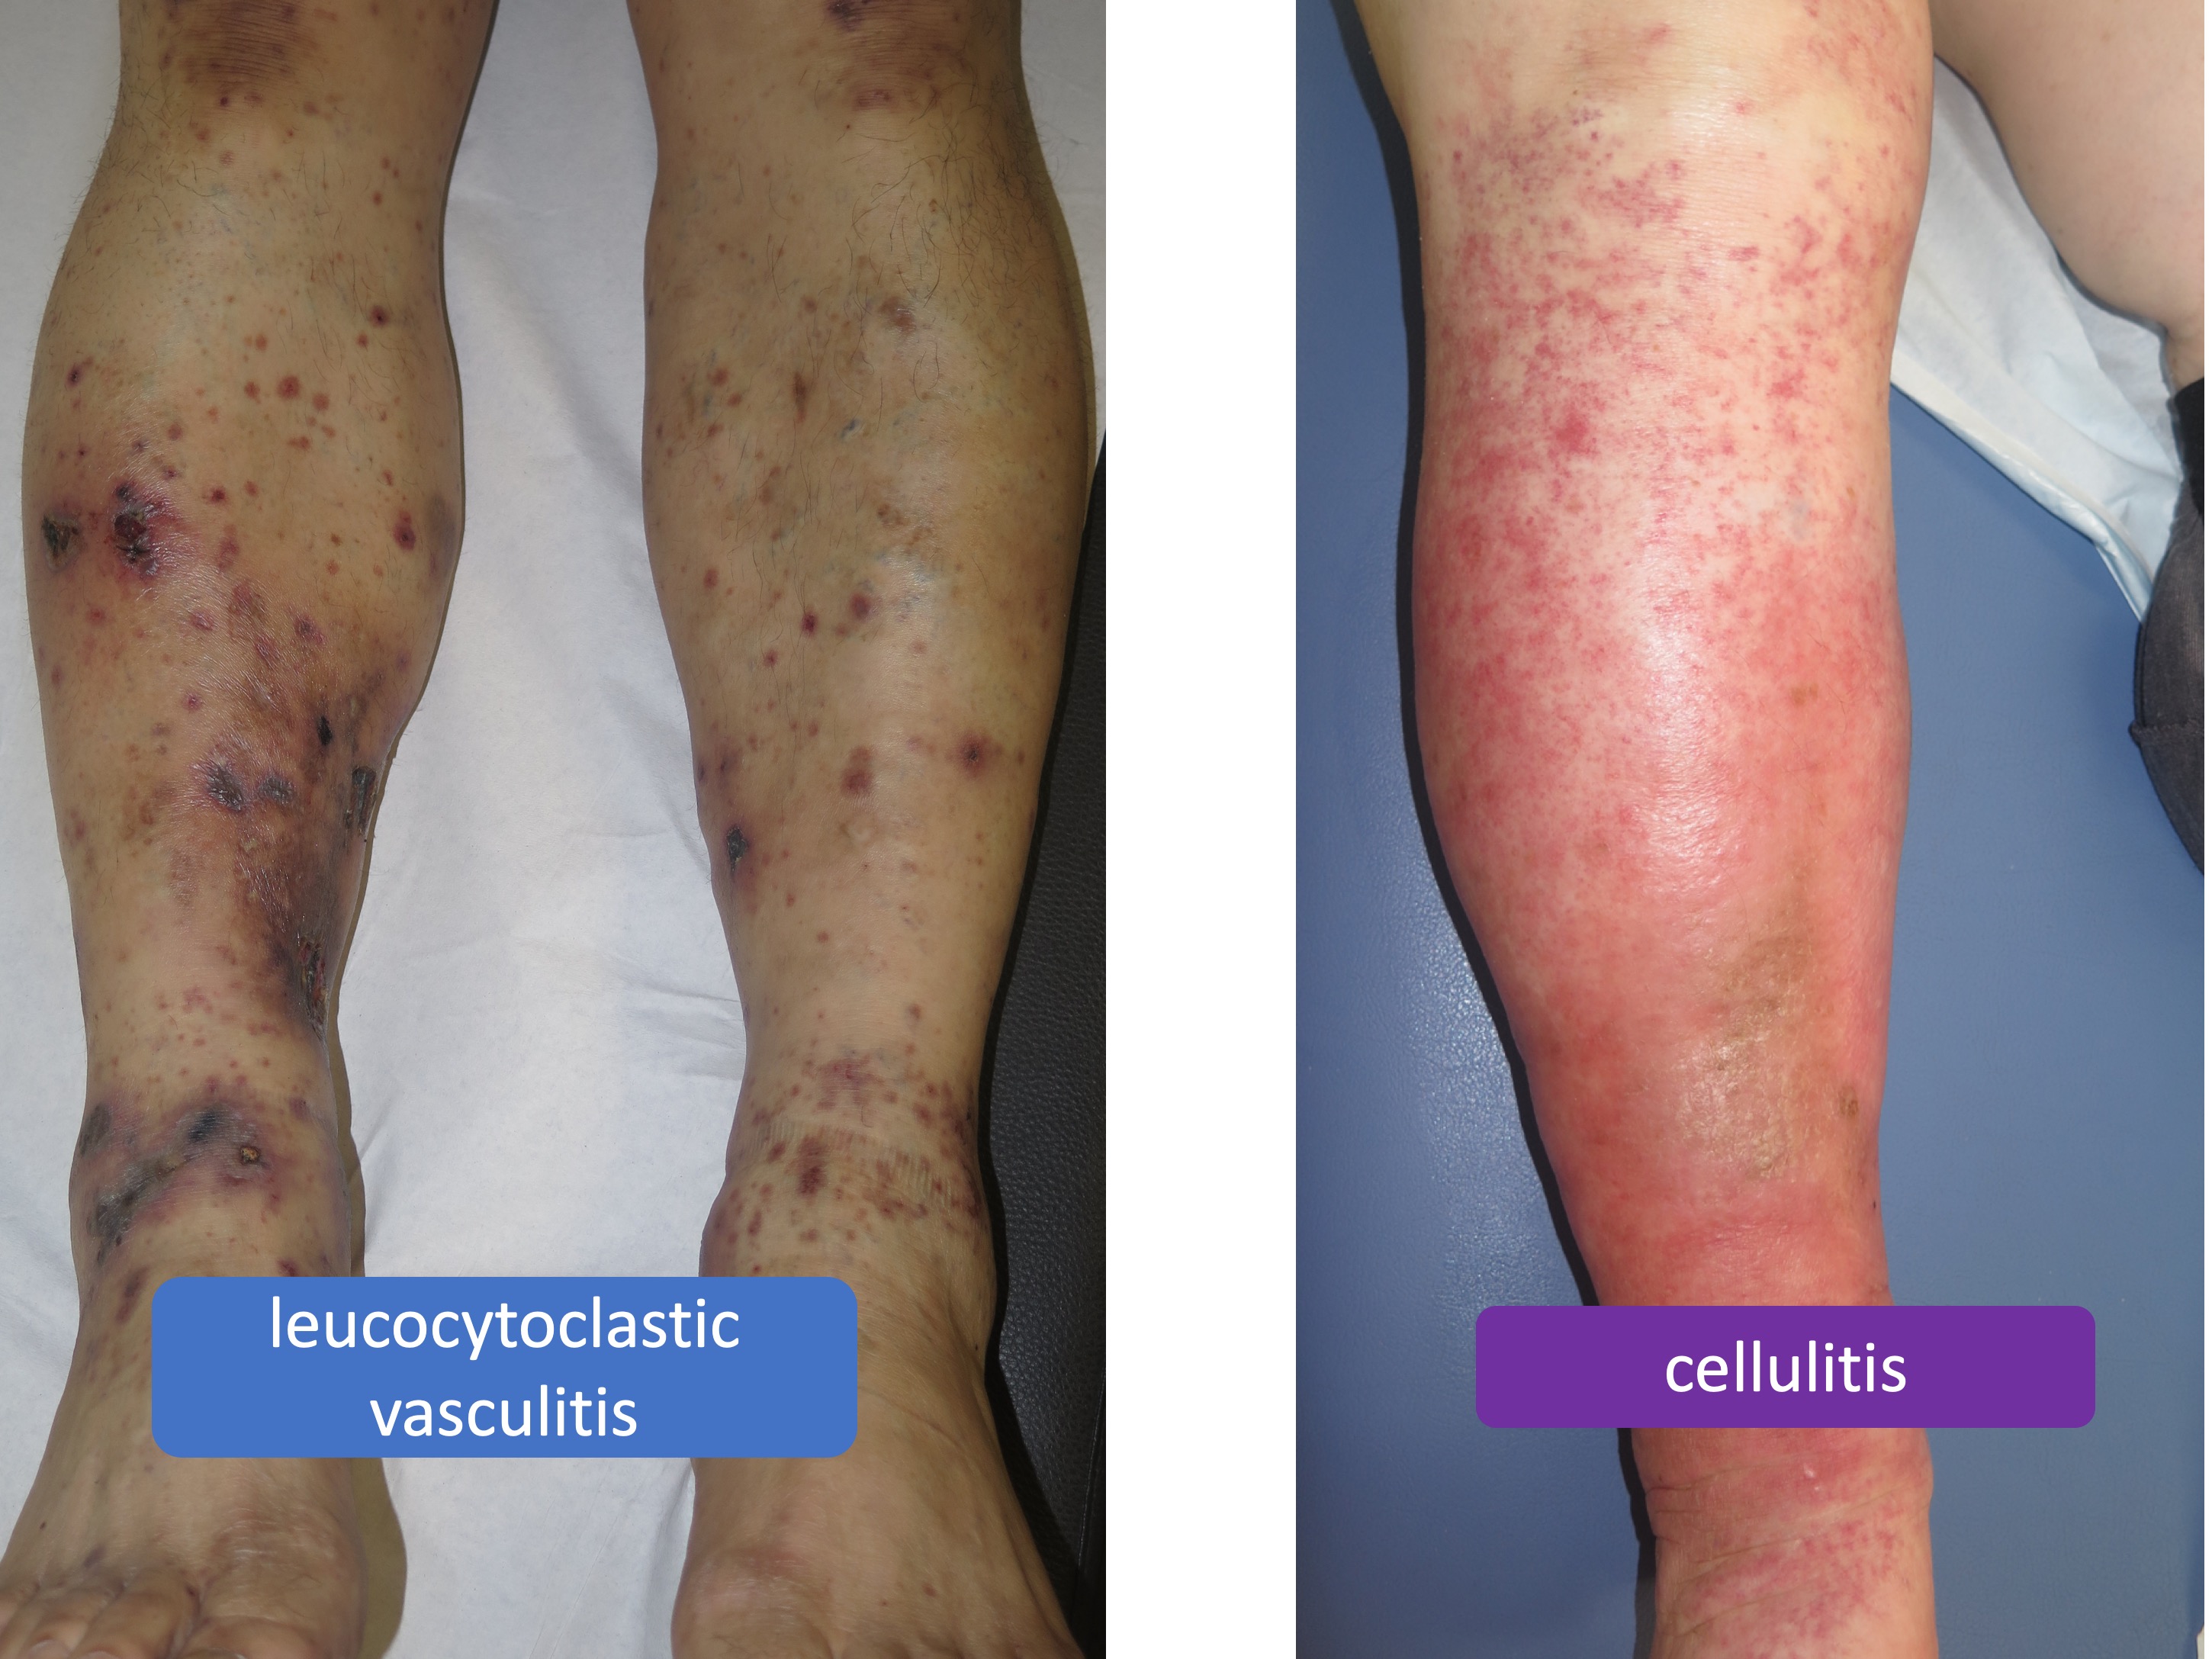 https://www.elenaconde.com/wp-content/uploads/2020/03/vasculitis-cellulitis.jpg